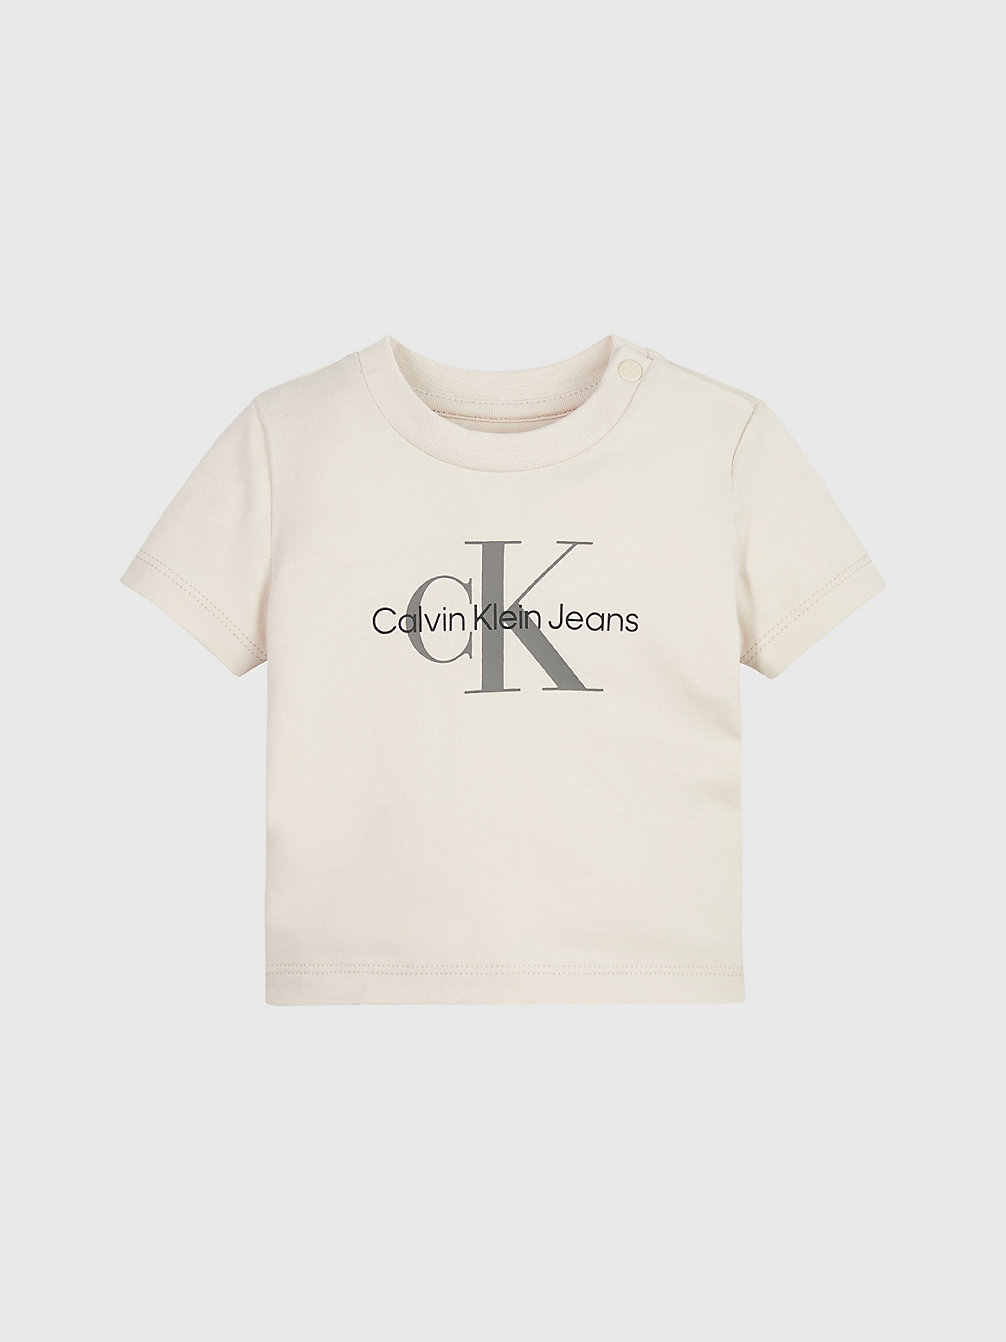 WHITECAP GRAY Baby-Logo-T-Shirt Aus Bio-Baumwolle undefined newborn Calvin Klein